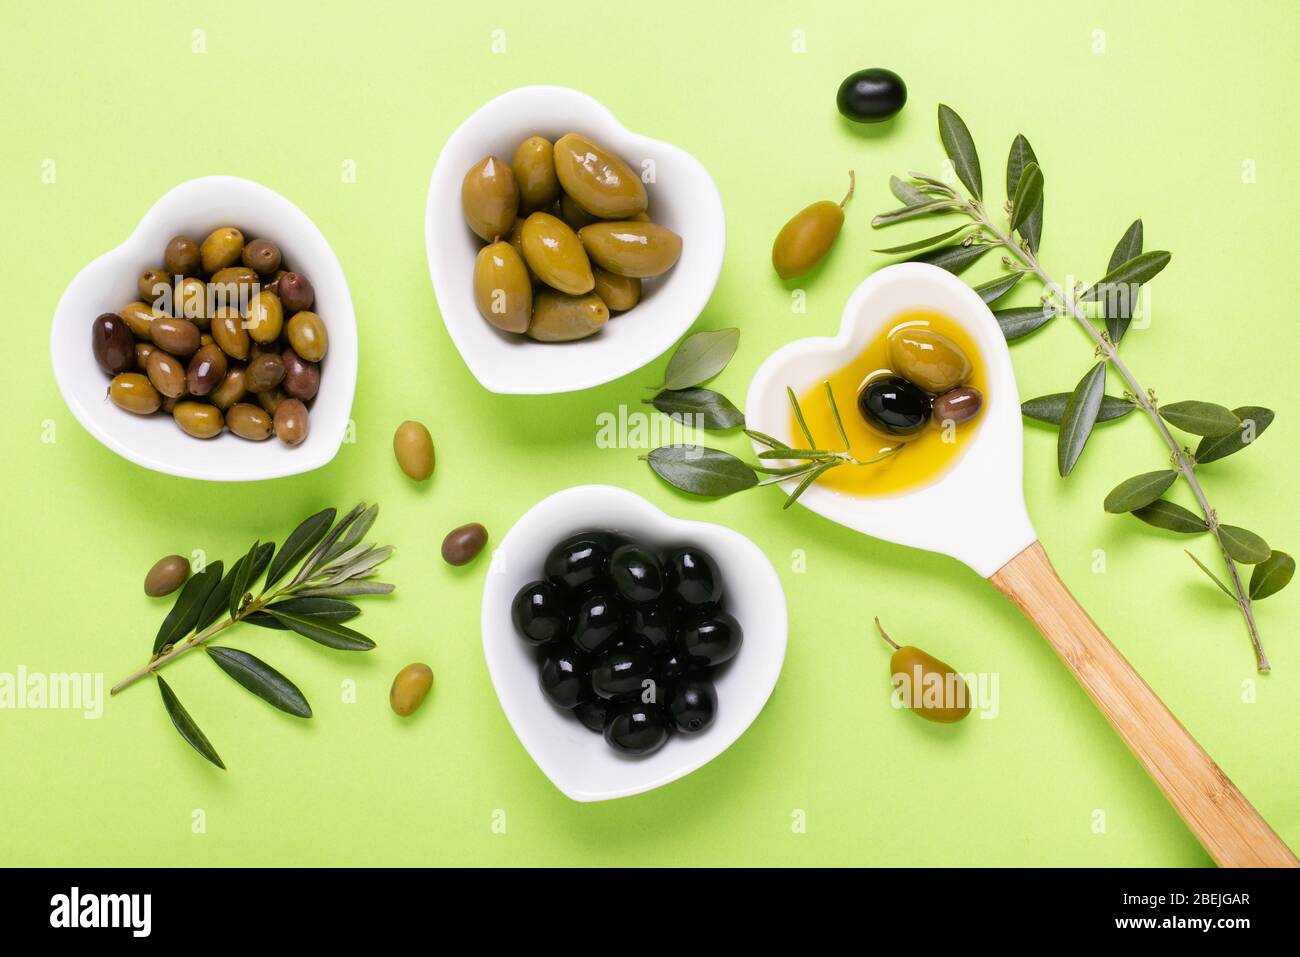 Composition vue d'en haut avec des bols en céramique en forme de coeur, de l'huile d'olive extra vierge, certains types d'olives et de branche d'olive sur un backgrou vert uniforme Banque D'Images